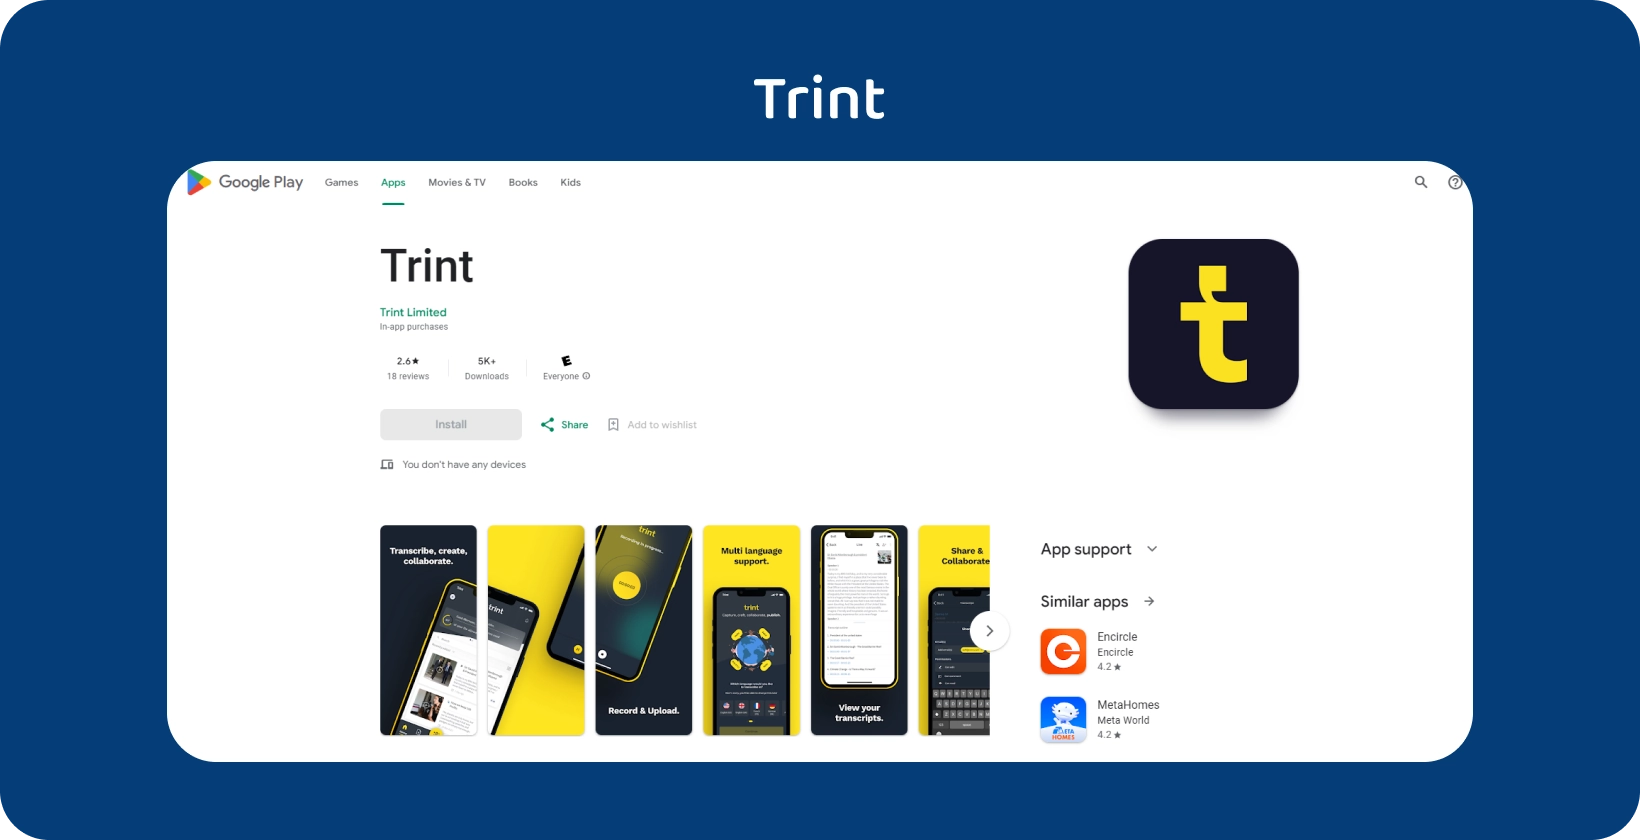 Приложение Trint отображается в Google Play, выделяя свои услуги транскрипции с интуитивно понятным мобильным интерфейсом.